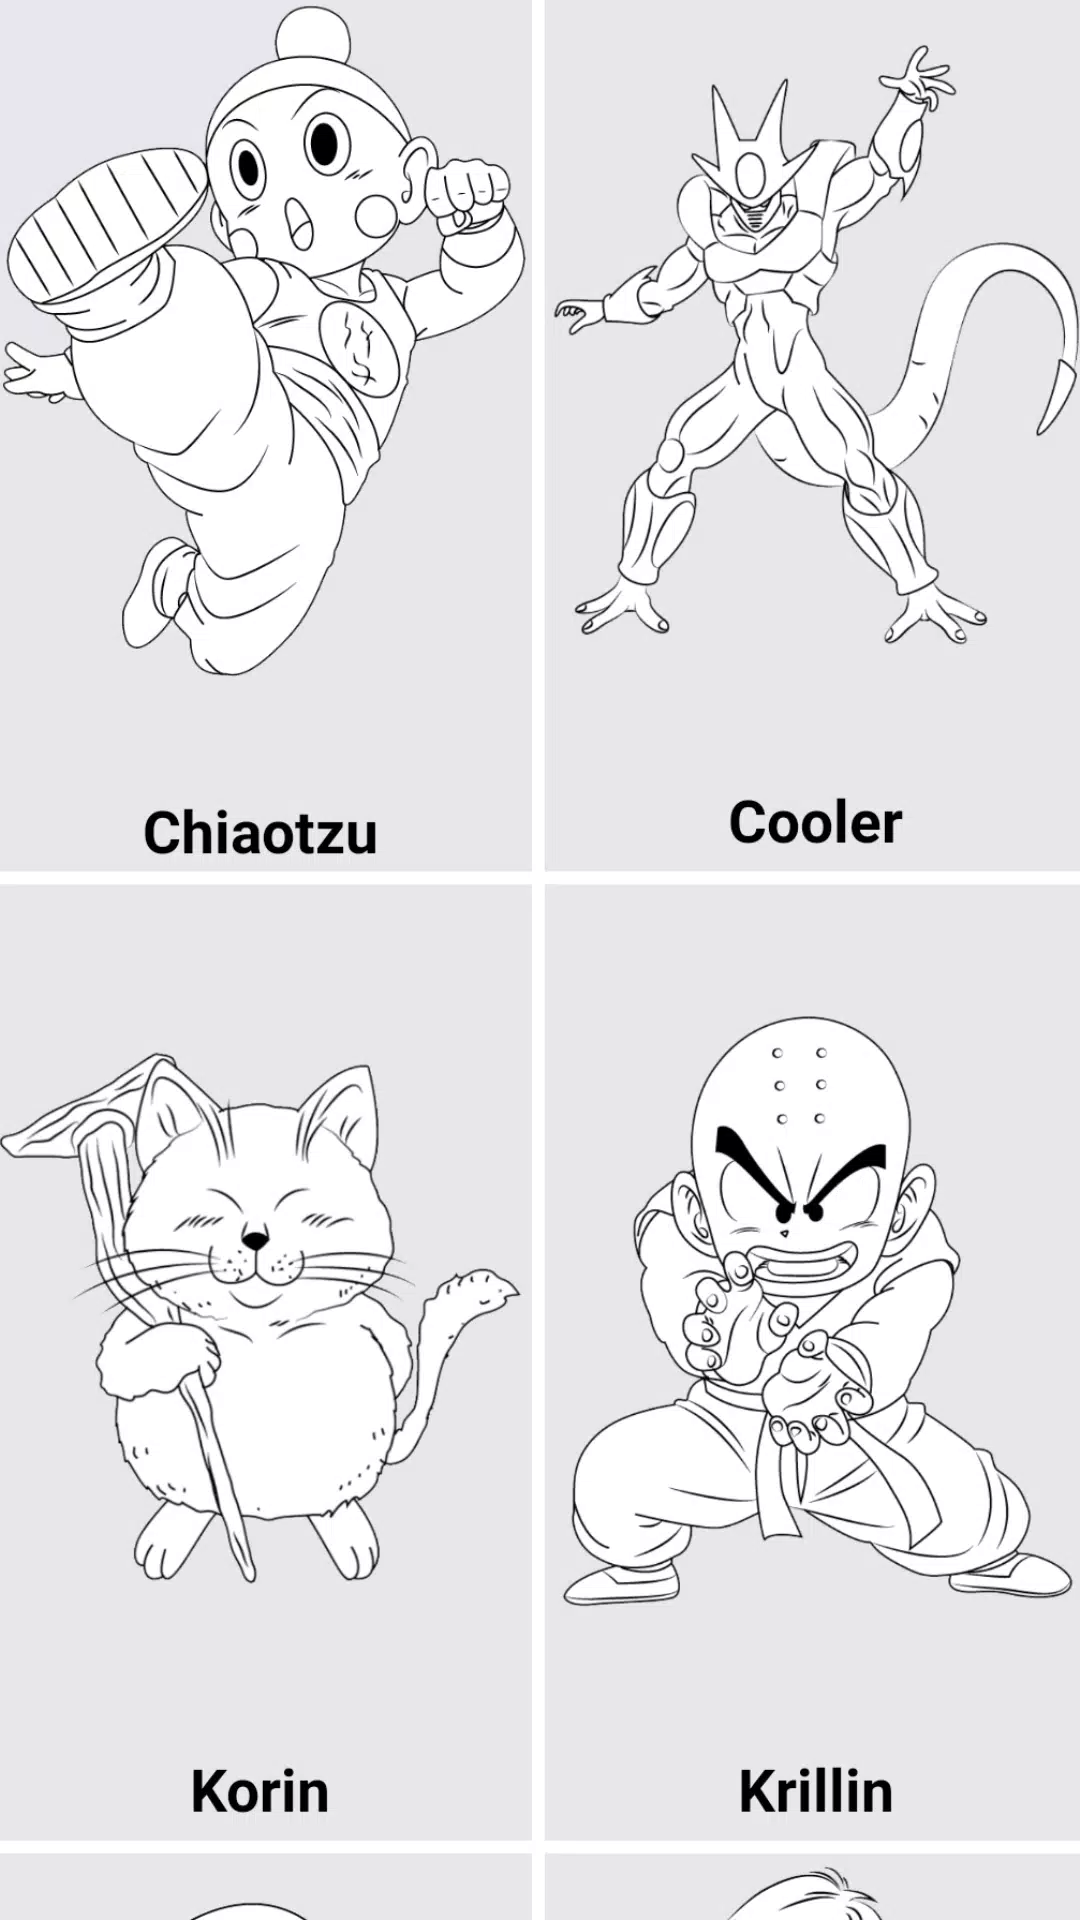 Download do APK de Como desenhar personagens Dragon Ball Super Z